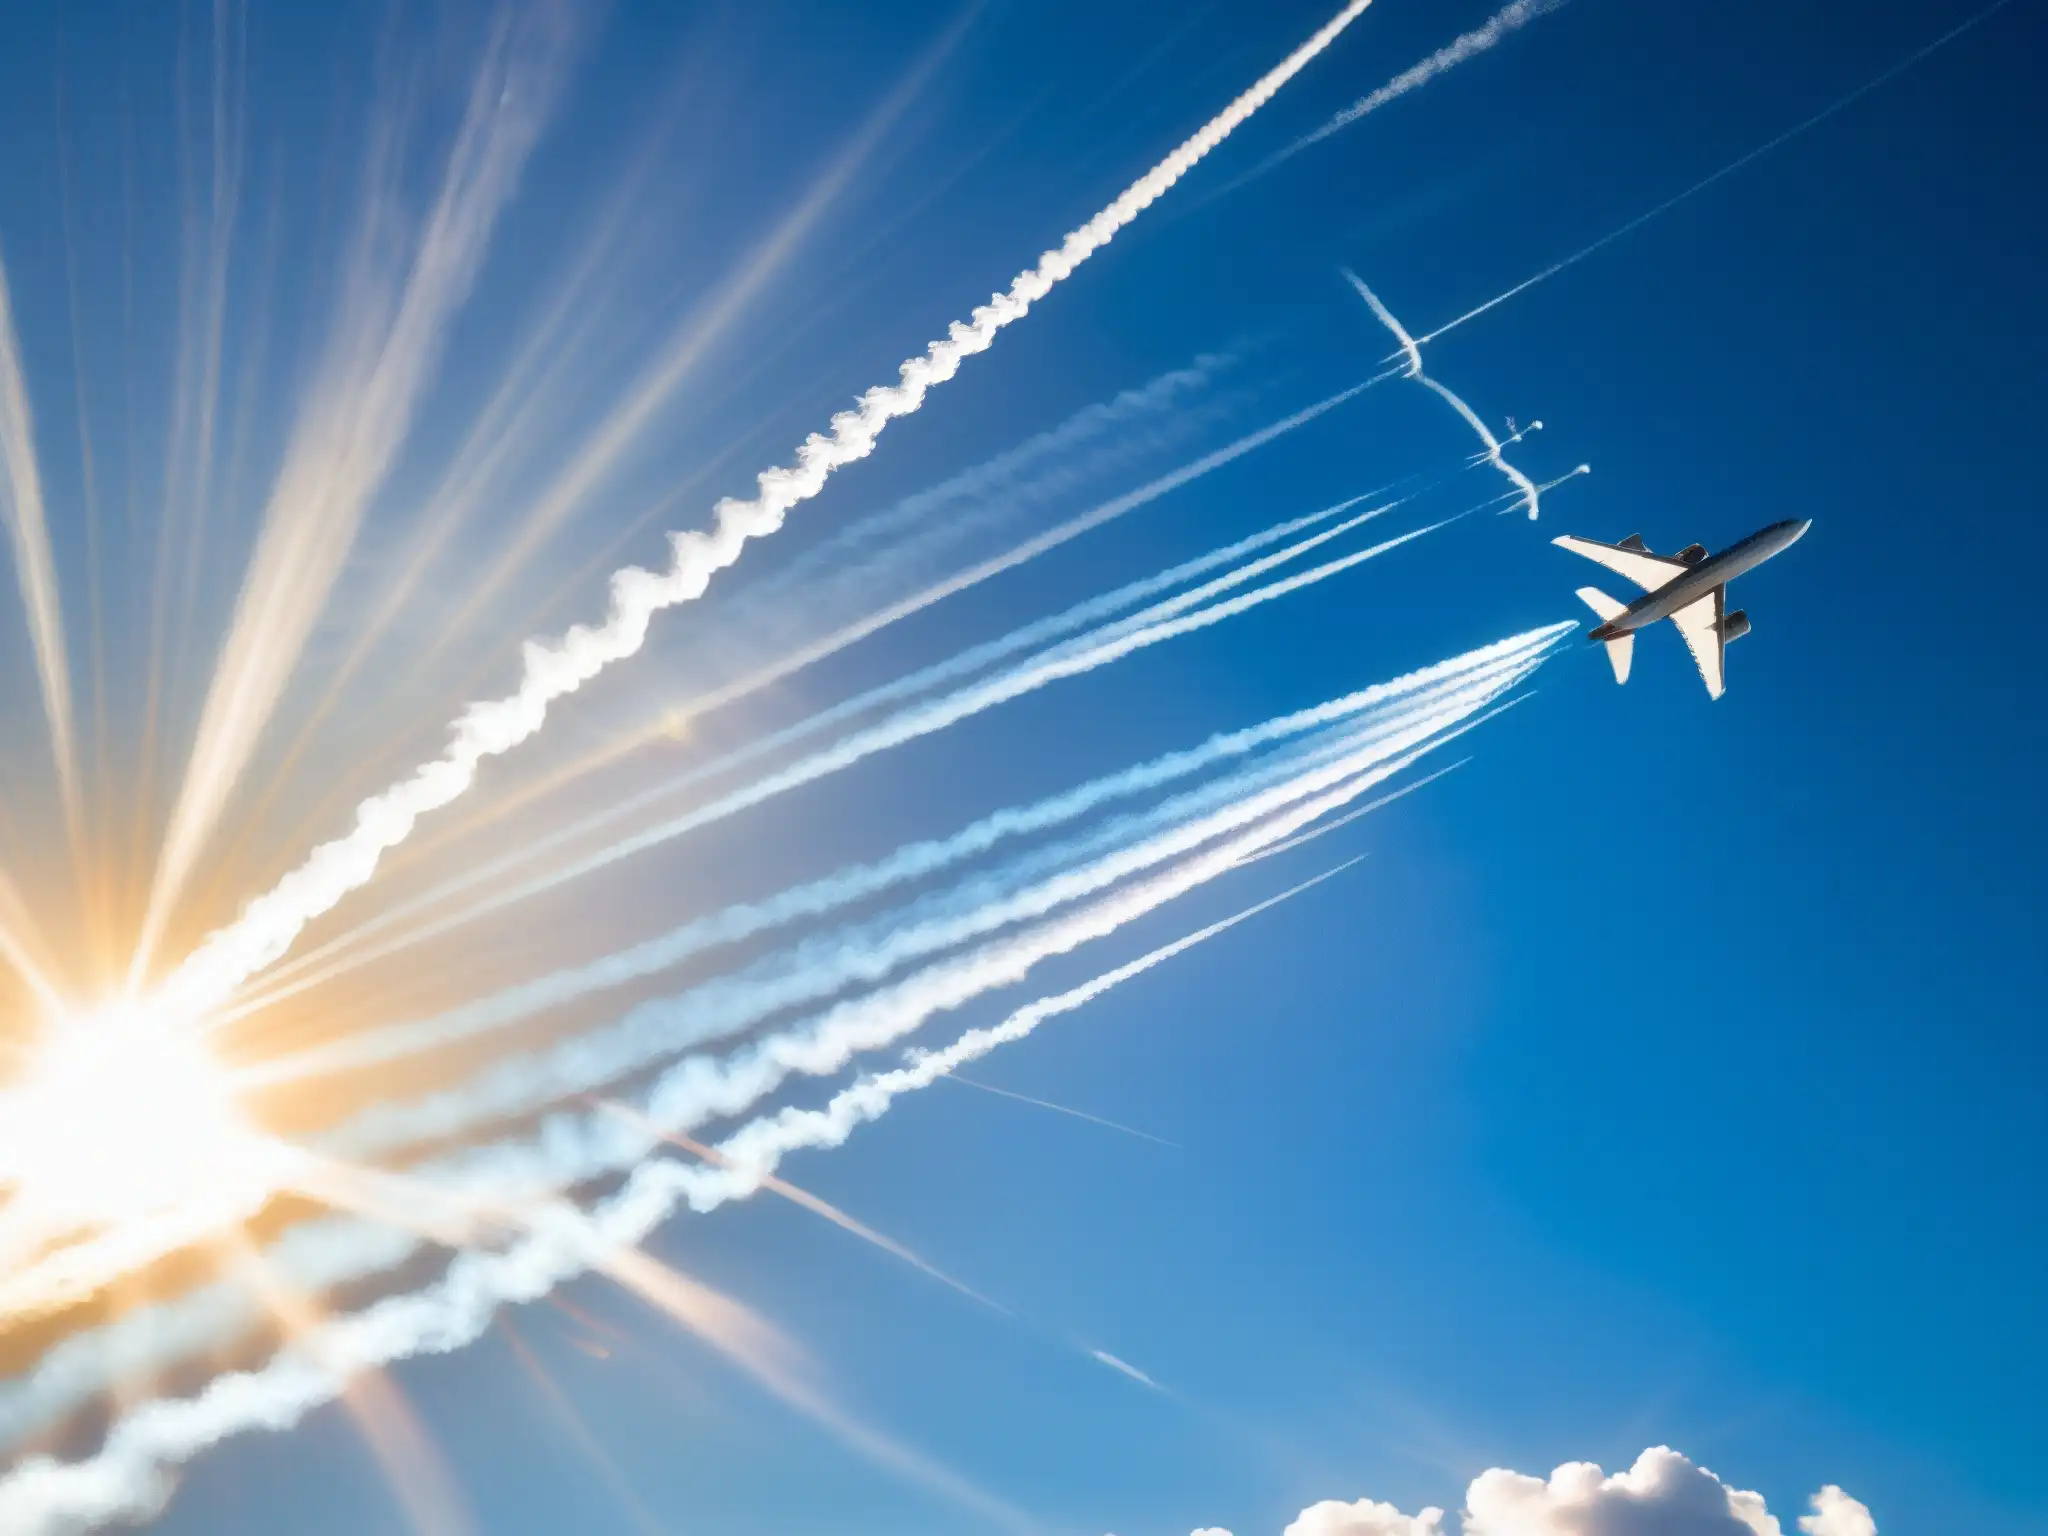 Avión dejando estelas químicas en el cielo, con el sol entre nubes, evocando misterio